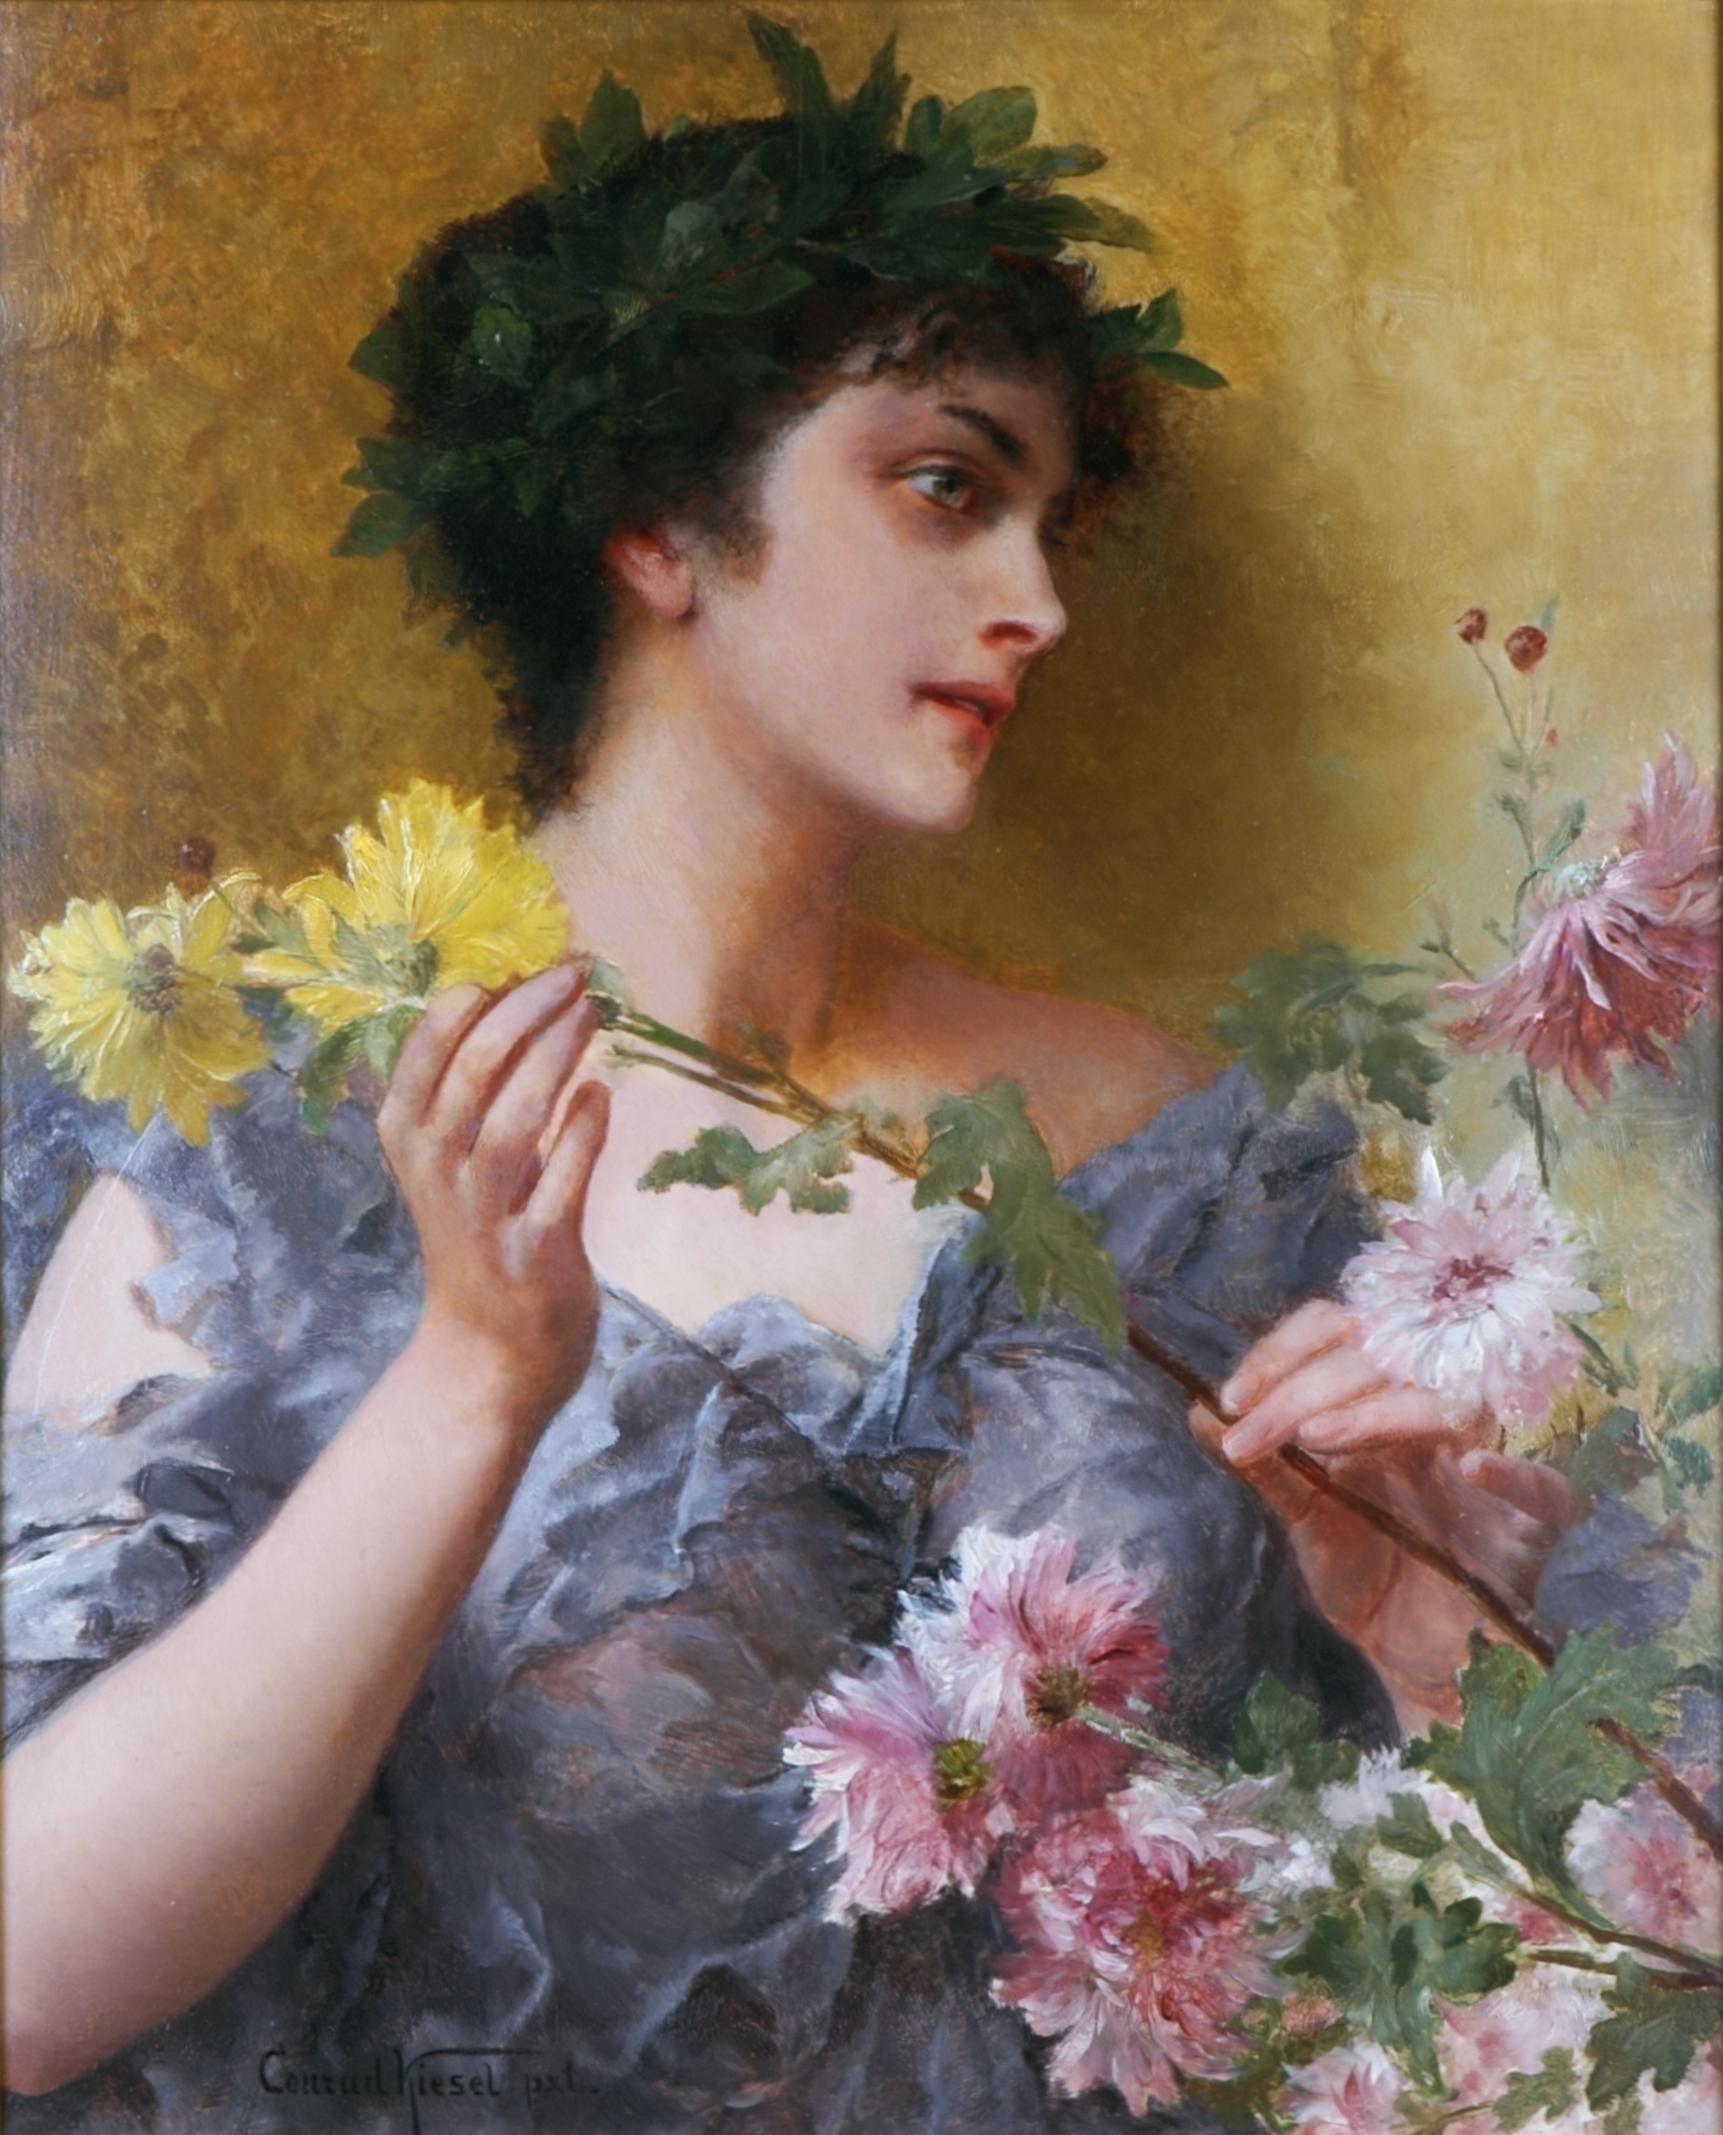 Conrad Kiesel Nude Painting – Das Geschenk von Blumen